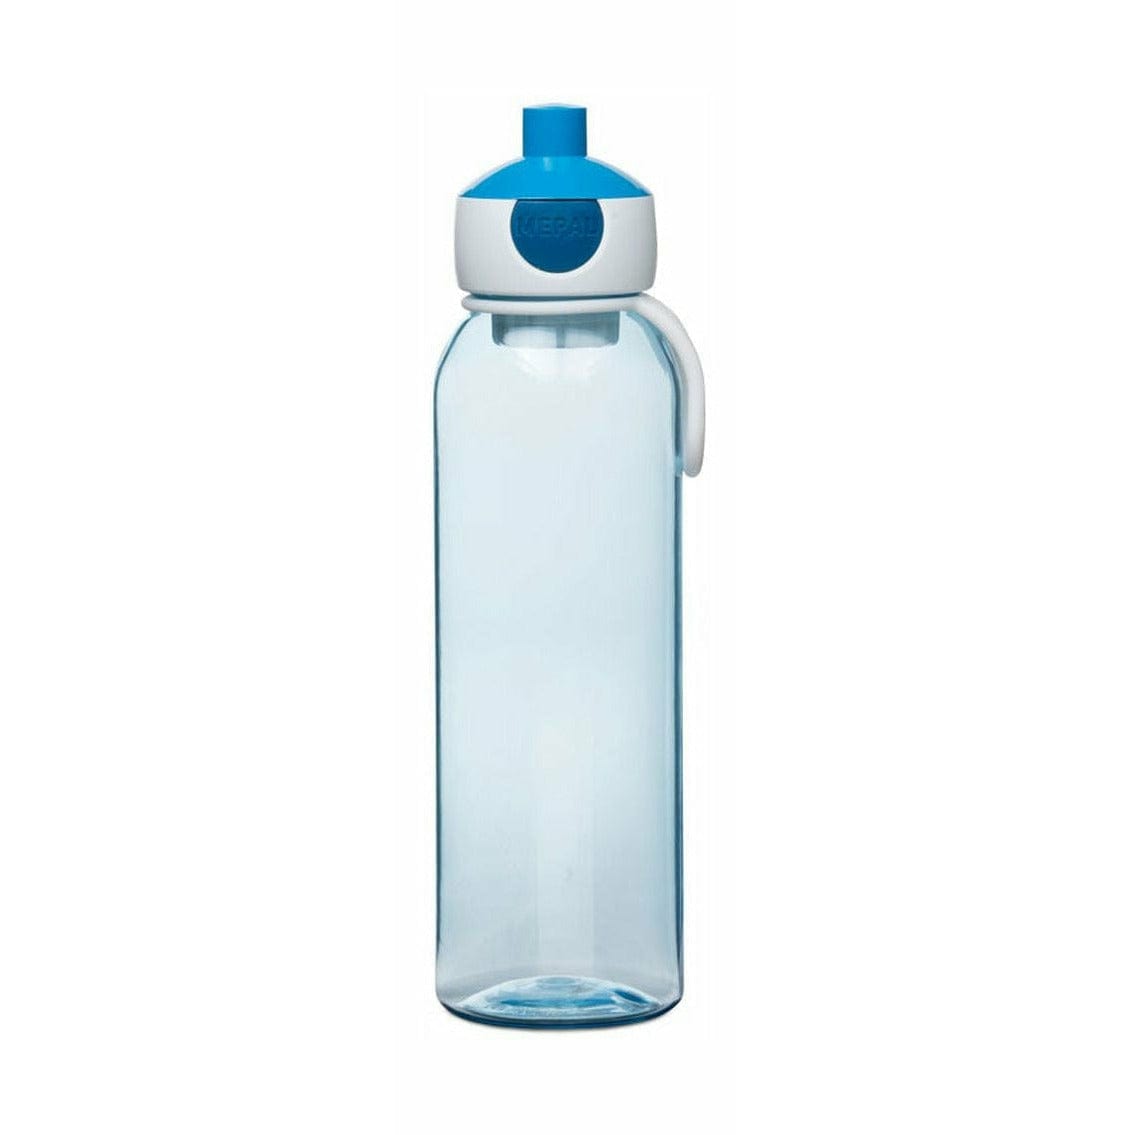 Mepal pop up water bouteille 0,5 L, bleu